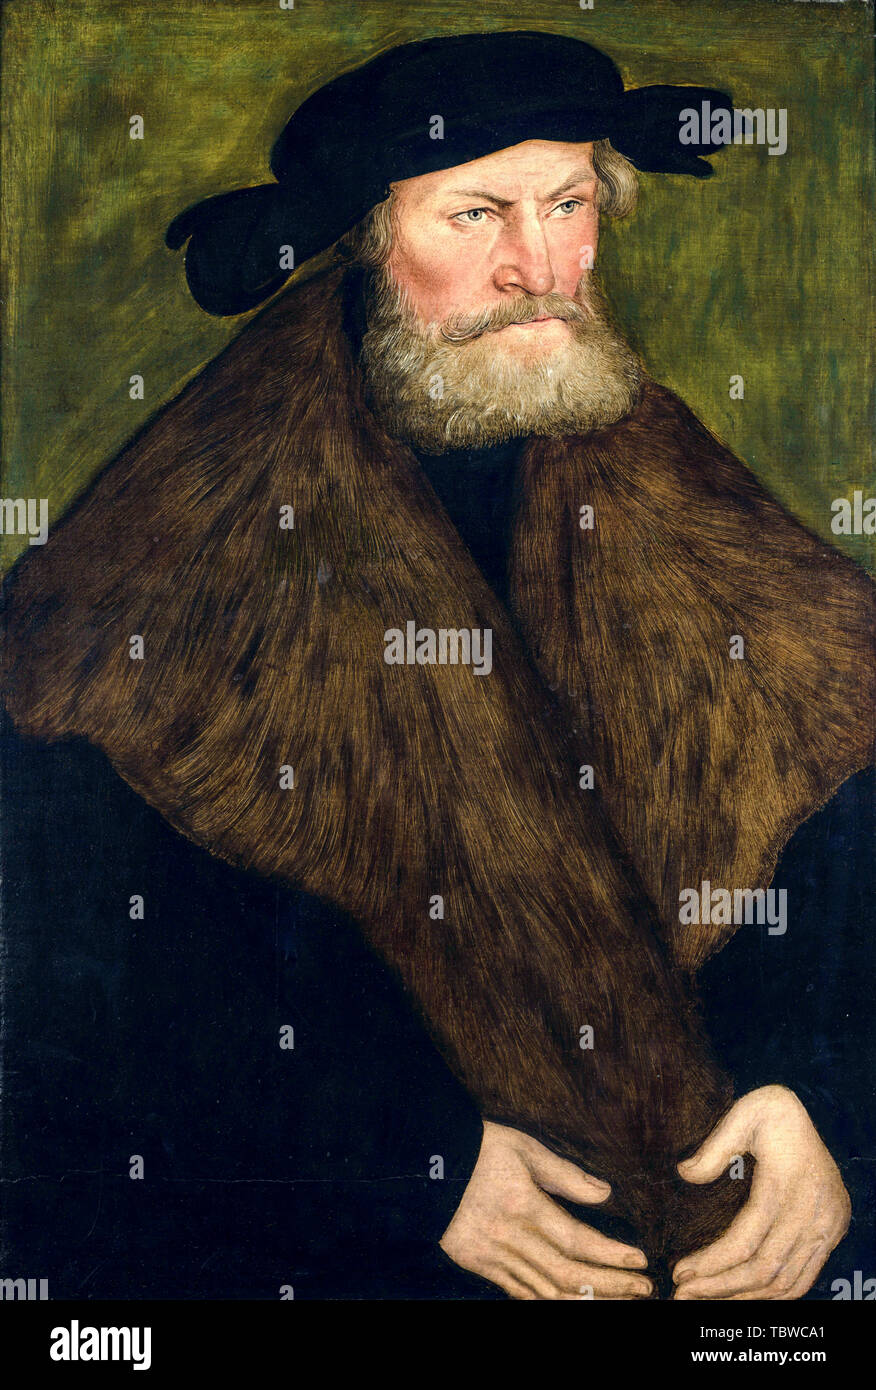 Lucas Cranach der Ältere, Herzog Heinrich IV., der Fromme von Sachsen, Portrait Malerei, 1528 Stockfoto